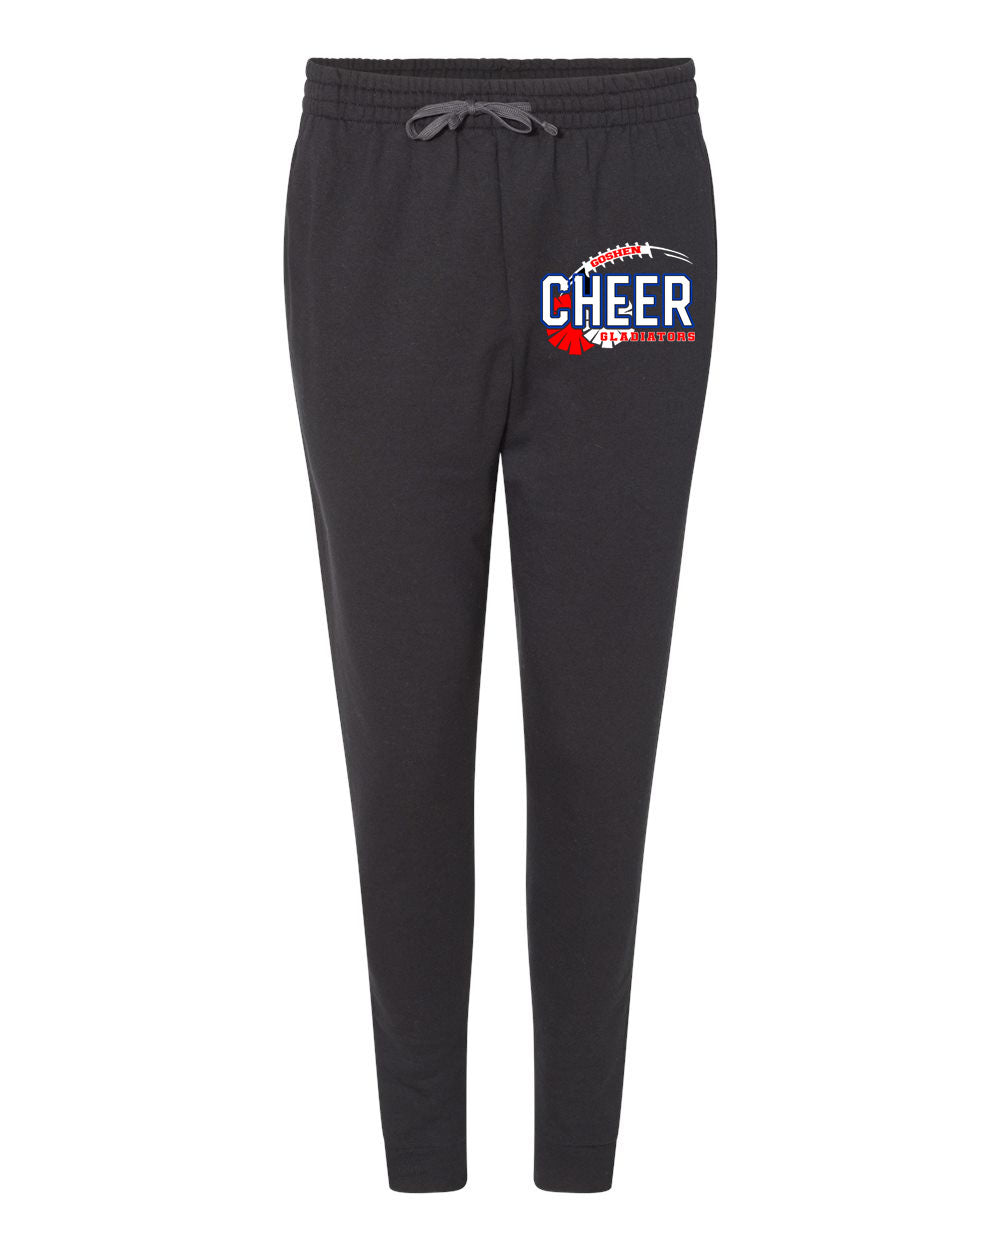 Goshen Cheer Design 6 Sweatpants